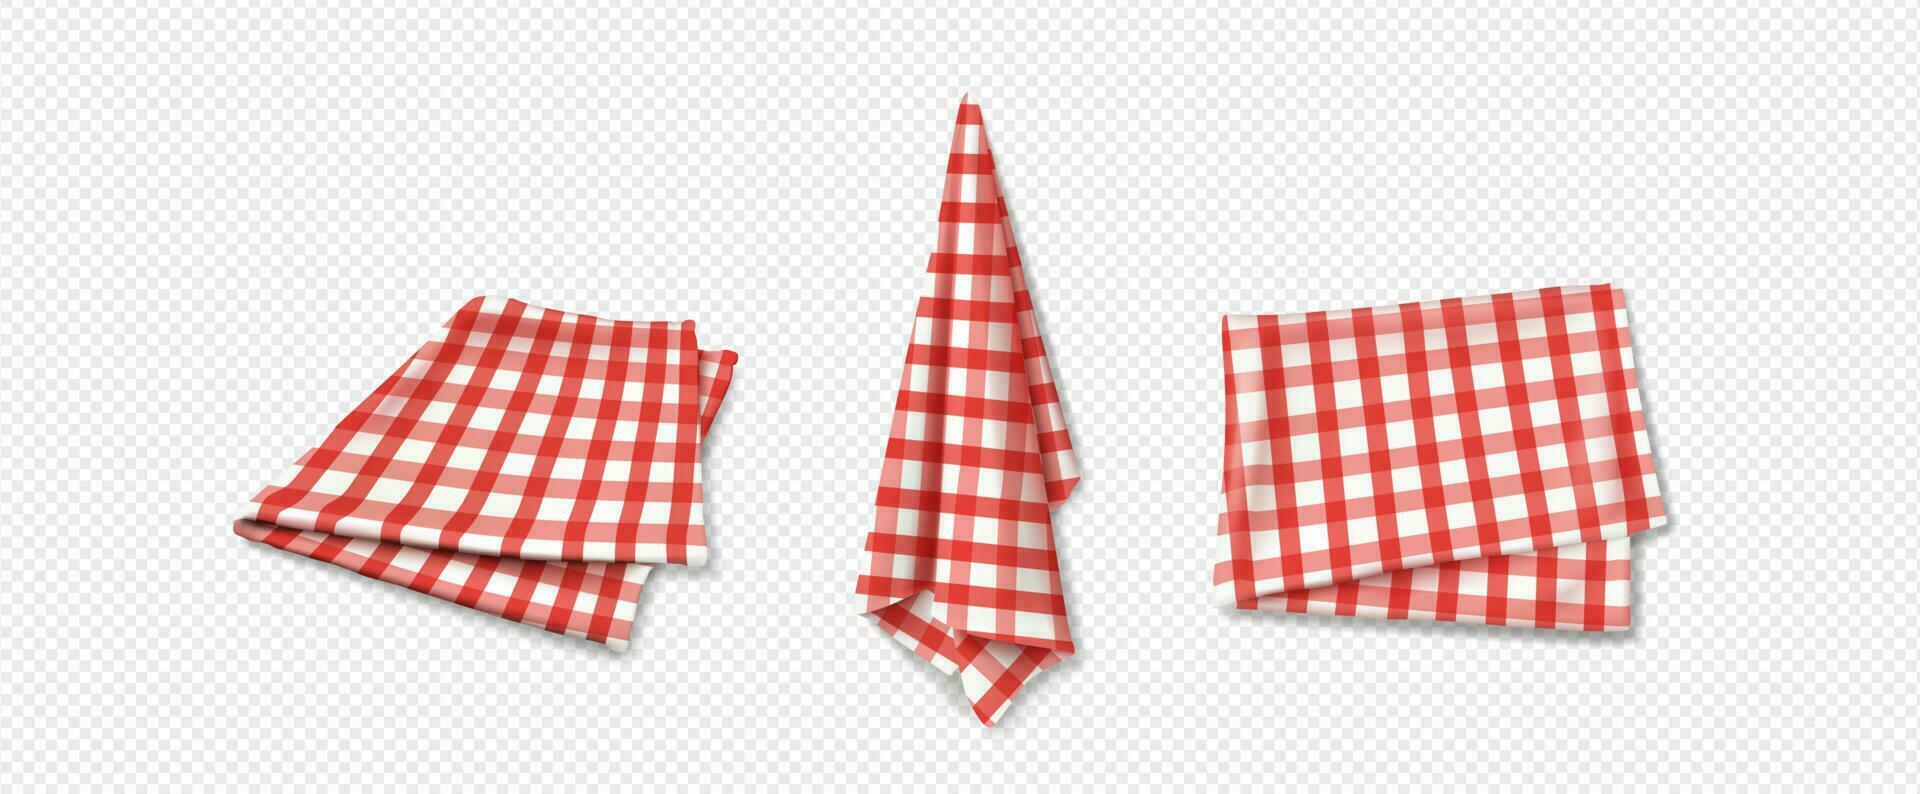 3d cucina asciugamano stoffa, tovaglia picnic tovagliolo vettore